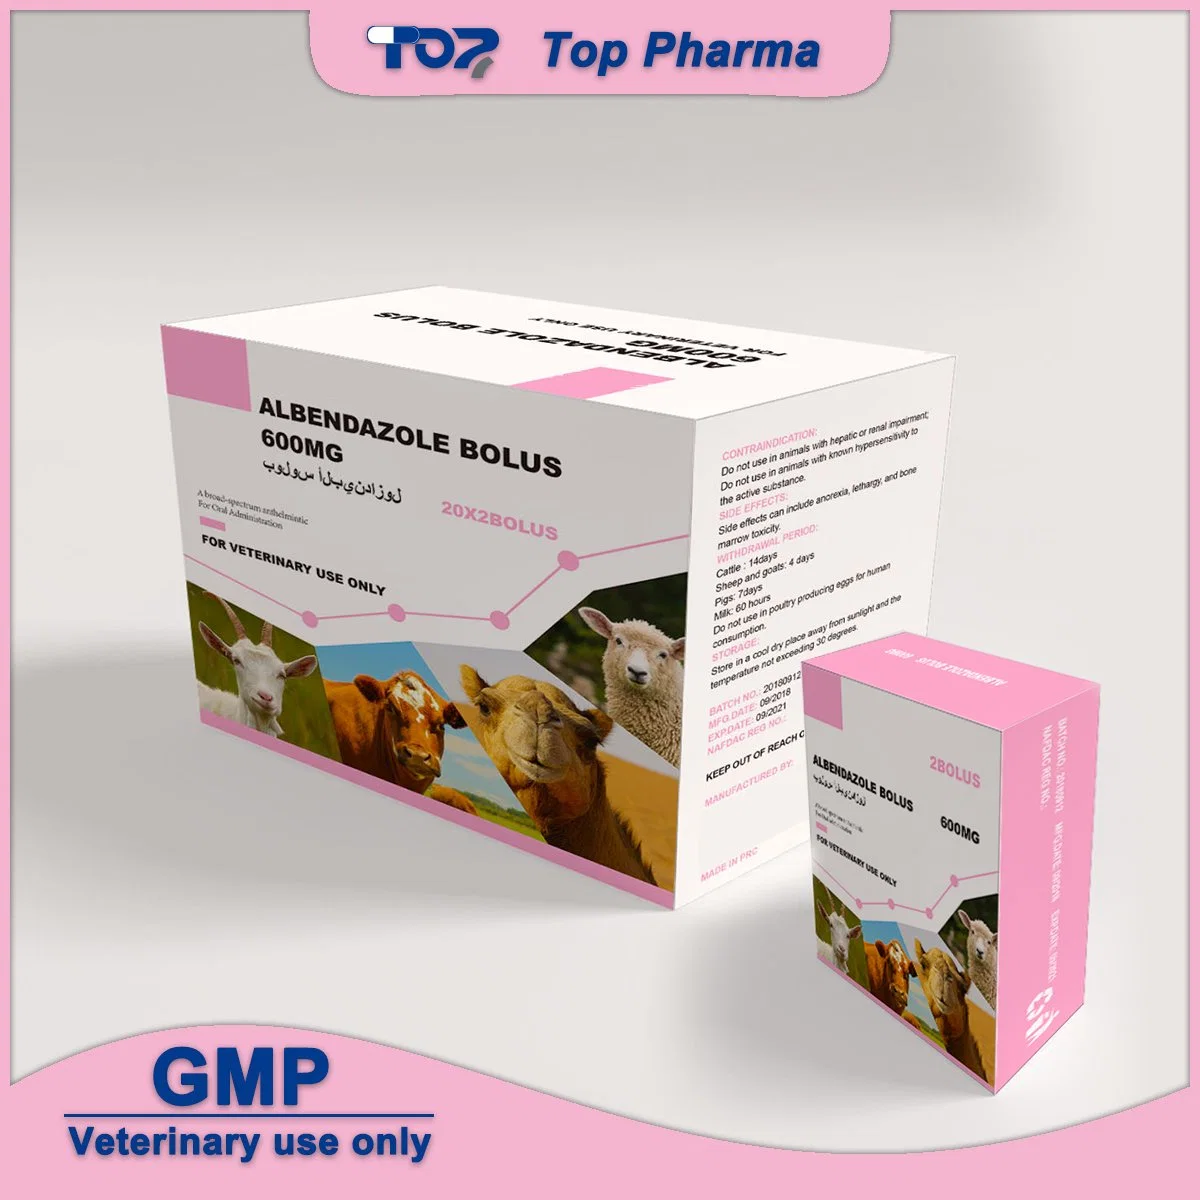 شهادة GMP (البرنامج العالمي لمكافحة المخدرات) دواء البيندازول بولوس 600mg البيطري